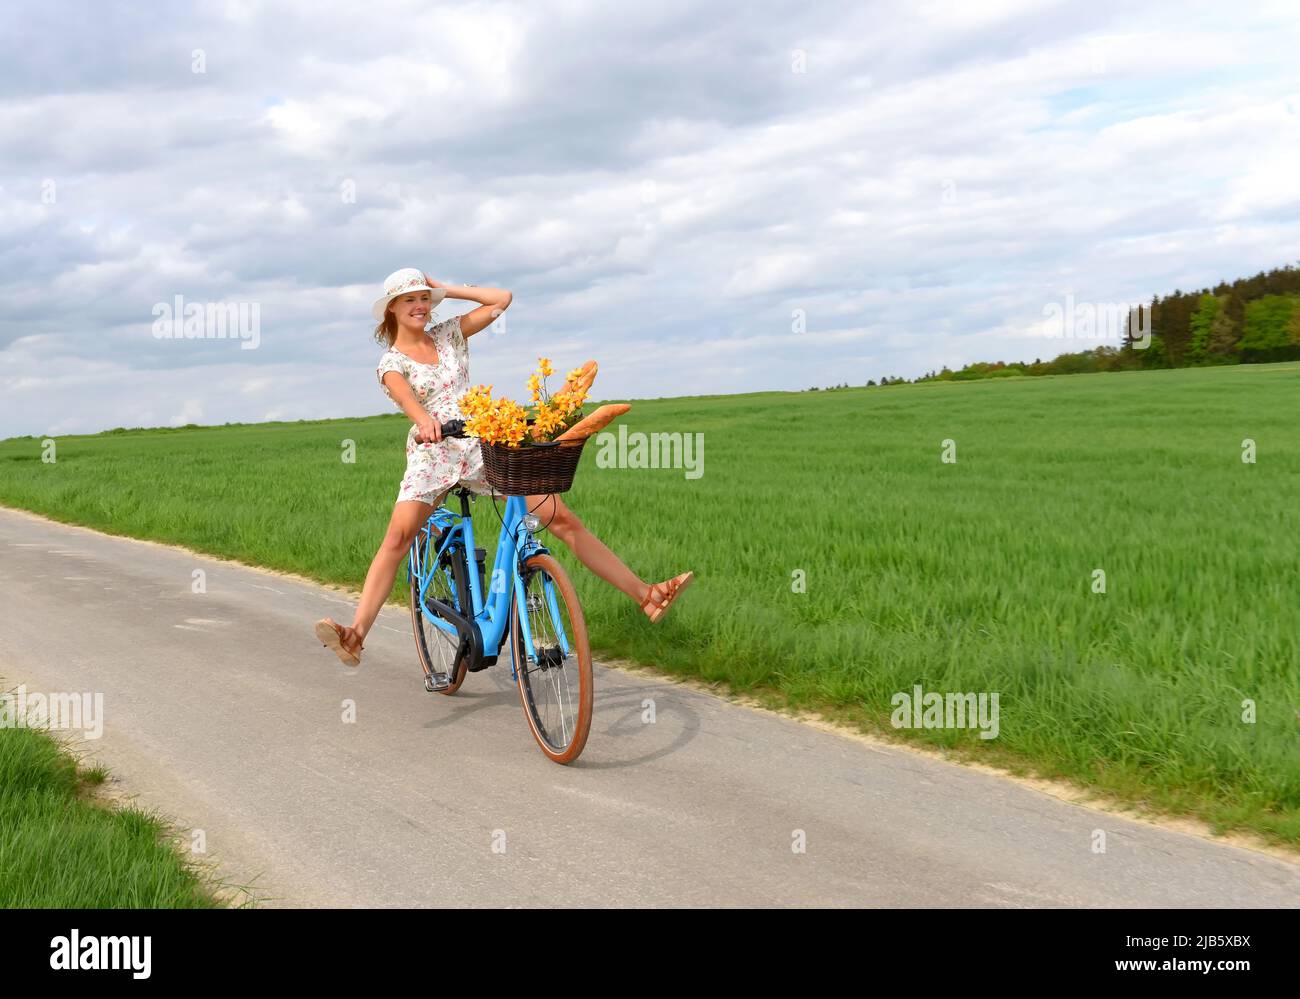 Una joven sin preocupaciones disfruta de su nueva bicicleta híbrida eléctrica. Ella se lleva para un paseo relajante en el país sin usar sus pedales de bicicleta. Foto de stock